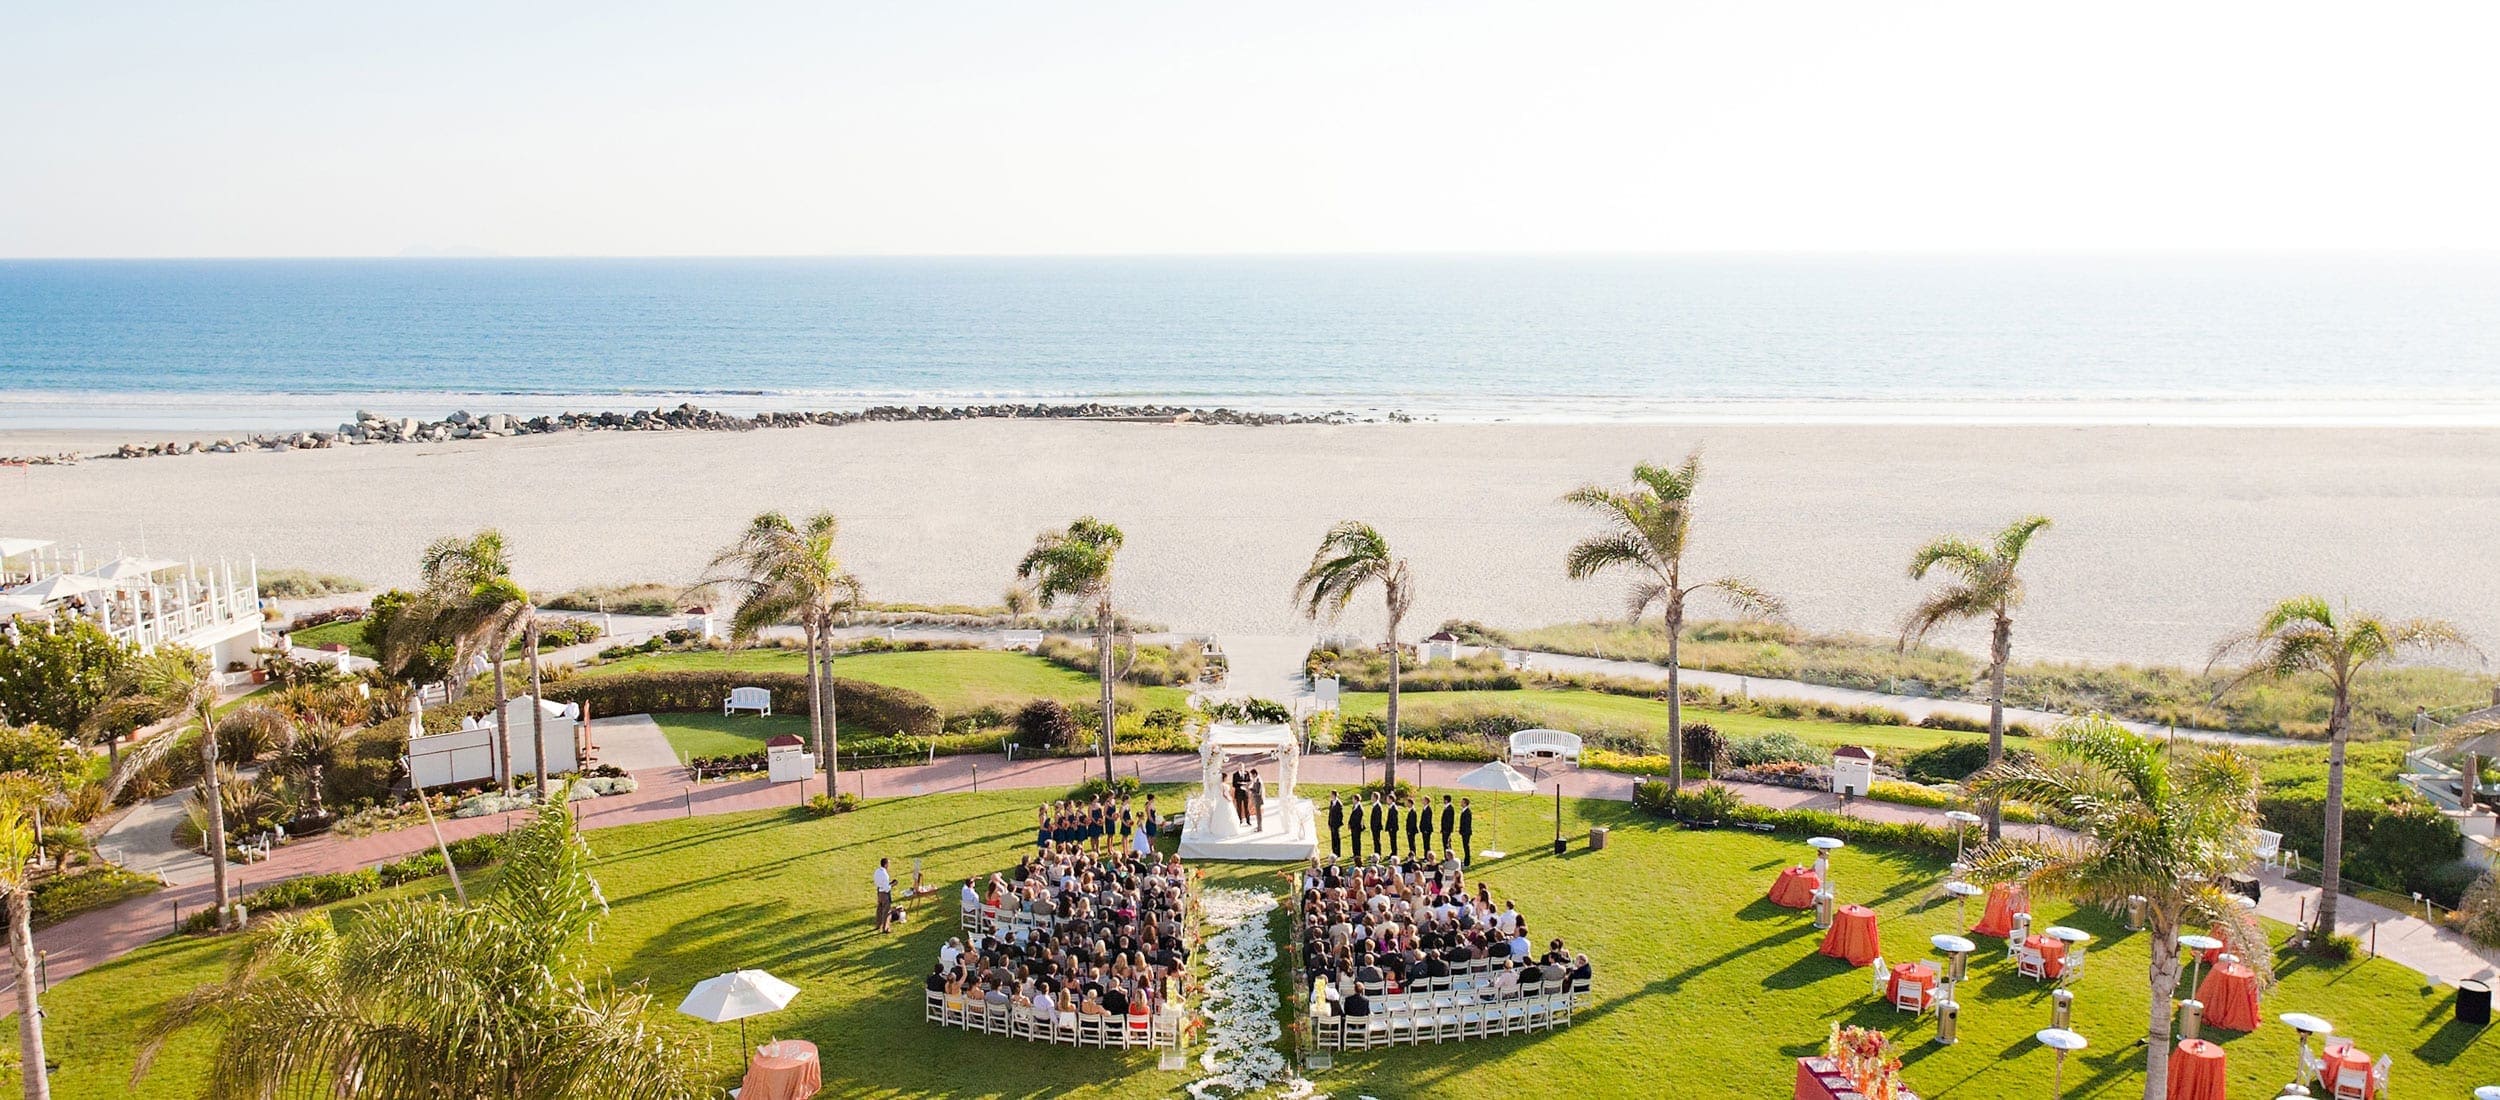 2 Hotel Del Coronado Wedding Windsor Lawn Ceremony 2500x1000 1 